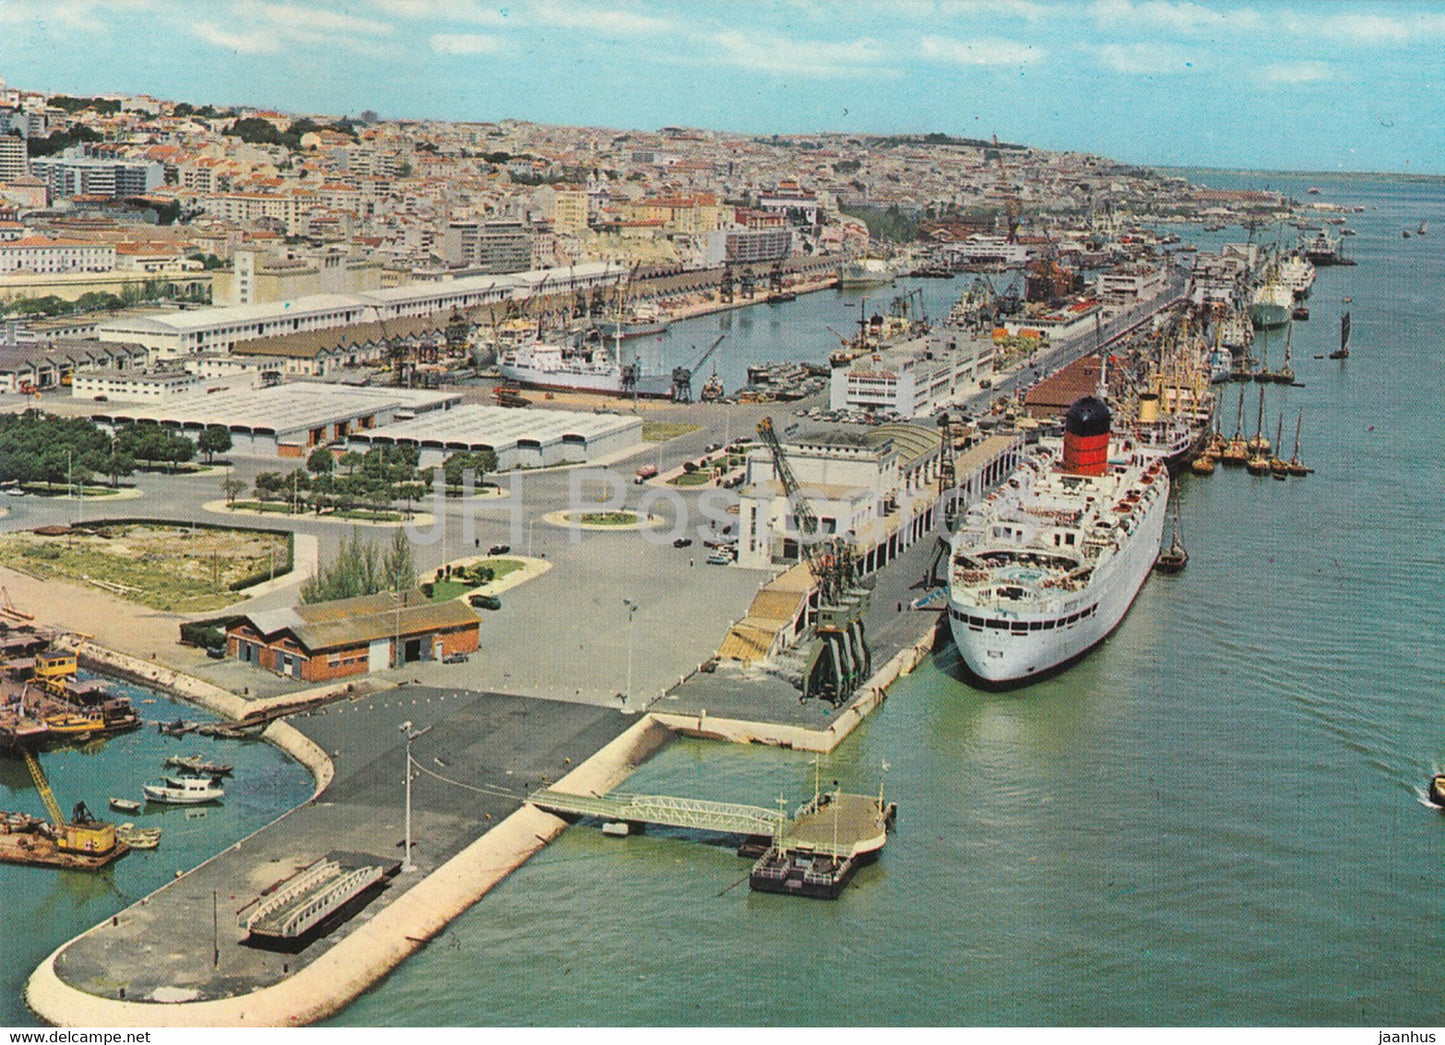 Lisbon - Lisboa - Porto de Lisboa - Vista Parcial - Harbour - Partial View - ship - 921 - 1986 - Portugal - used - JH Postcards